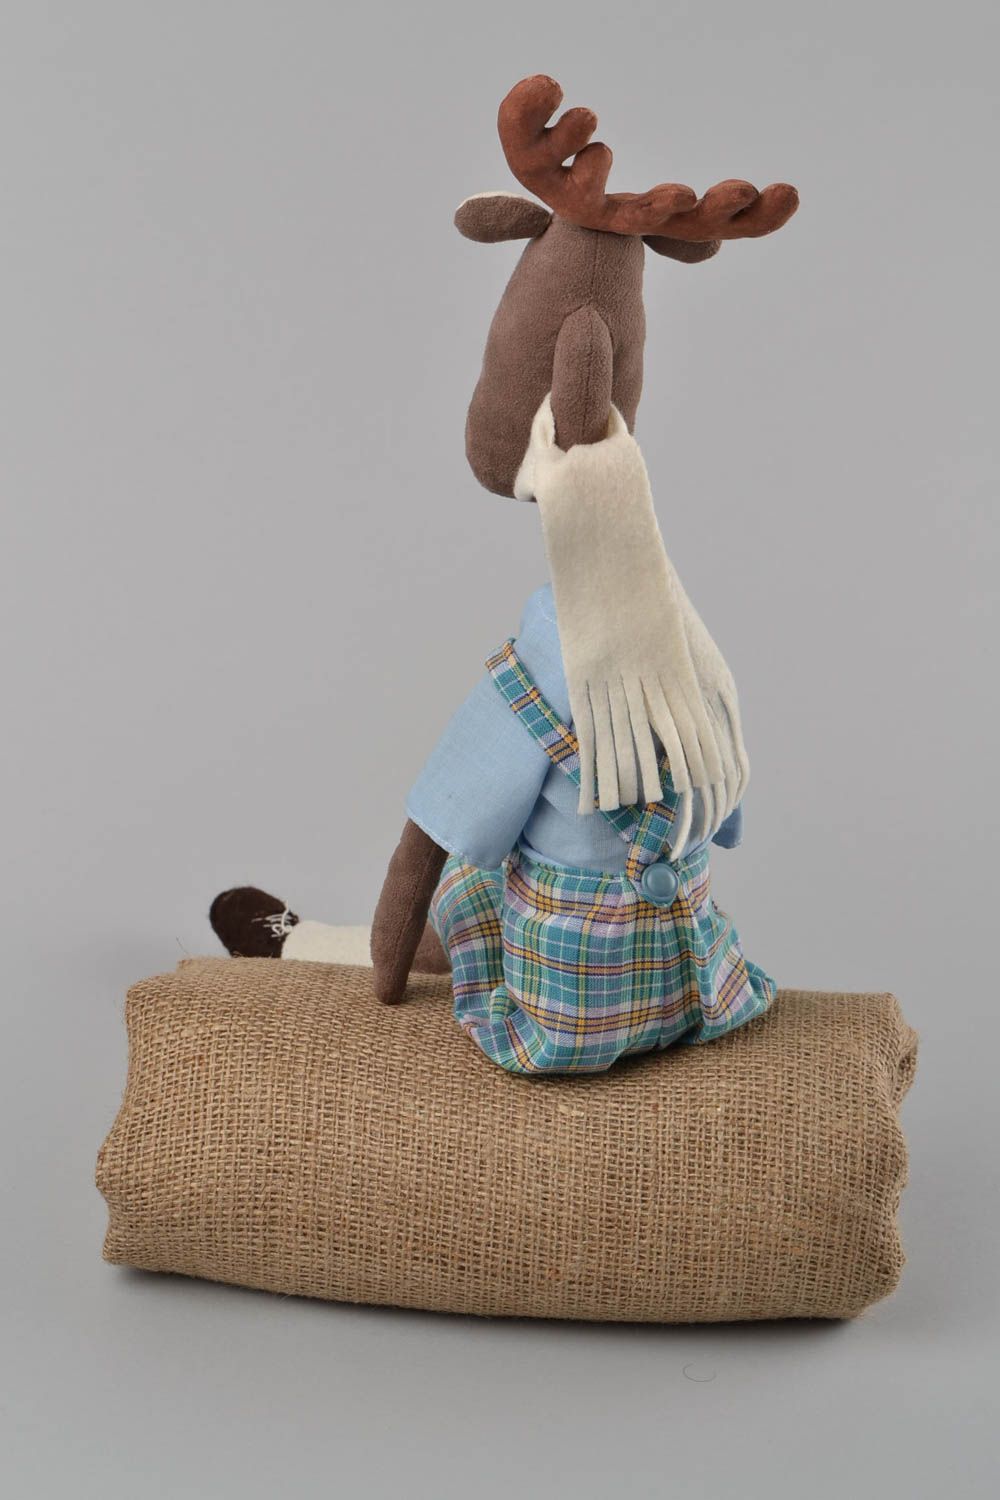 Textil Kuscheltier Elch aus künstlichem Wildleder handmade Schmuck für Dekor  foto 5